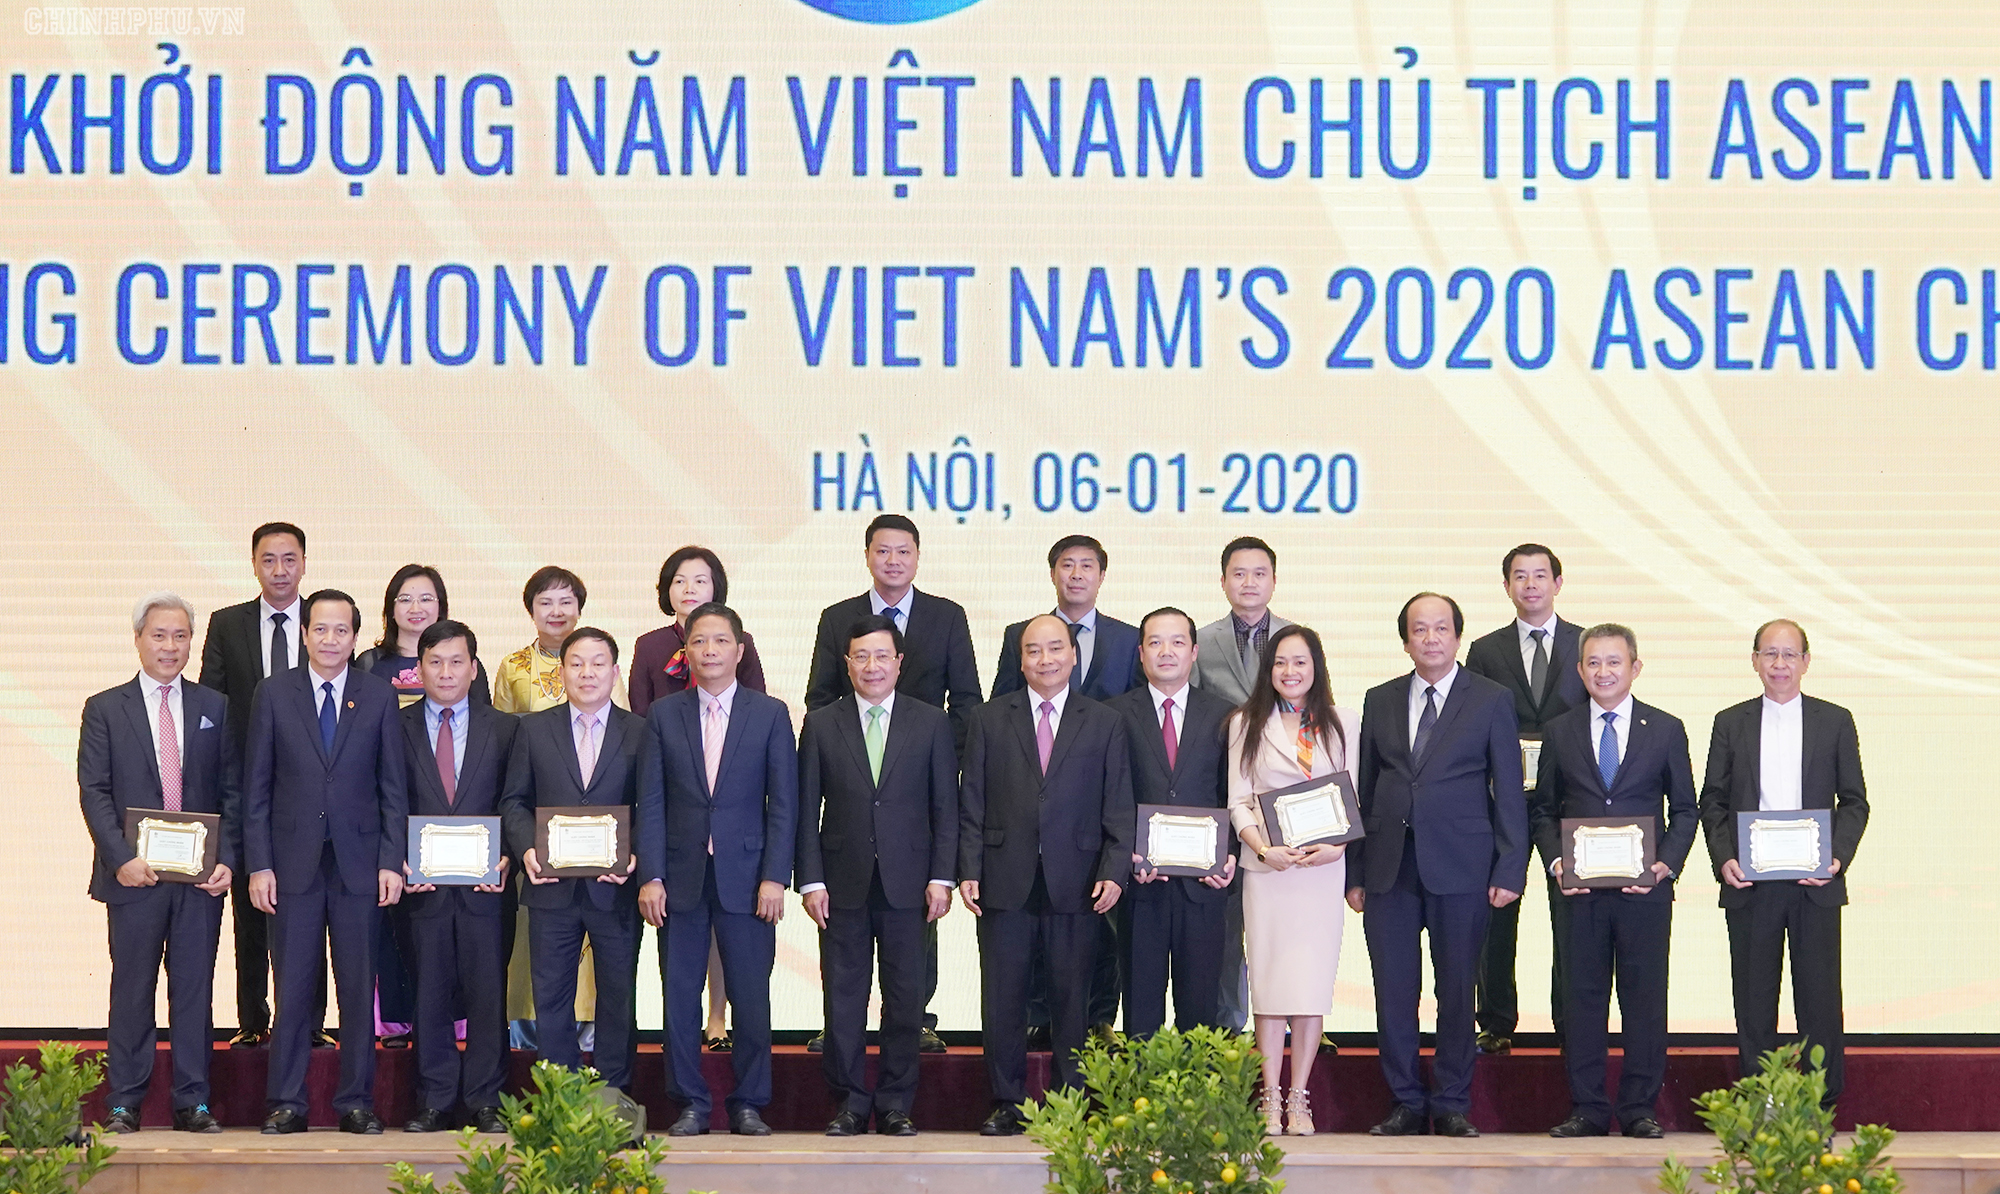 Thủ tướng Nguyễn Xuân Phúc, Phó Thủ tướng Phạm Bình Minh, lãnh đạo một số bộ ngành cùng các đơn vị tài trợ đặc biệt cho năm Chủ tịch ASEAN 2020 - Ảnh: VGP/Quang Hiếu